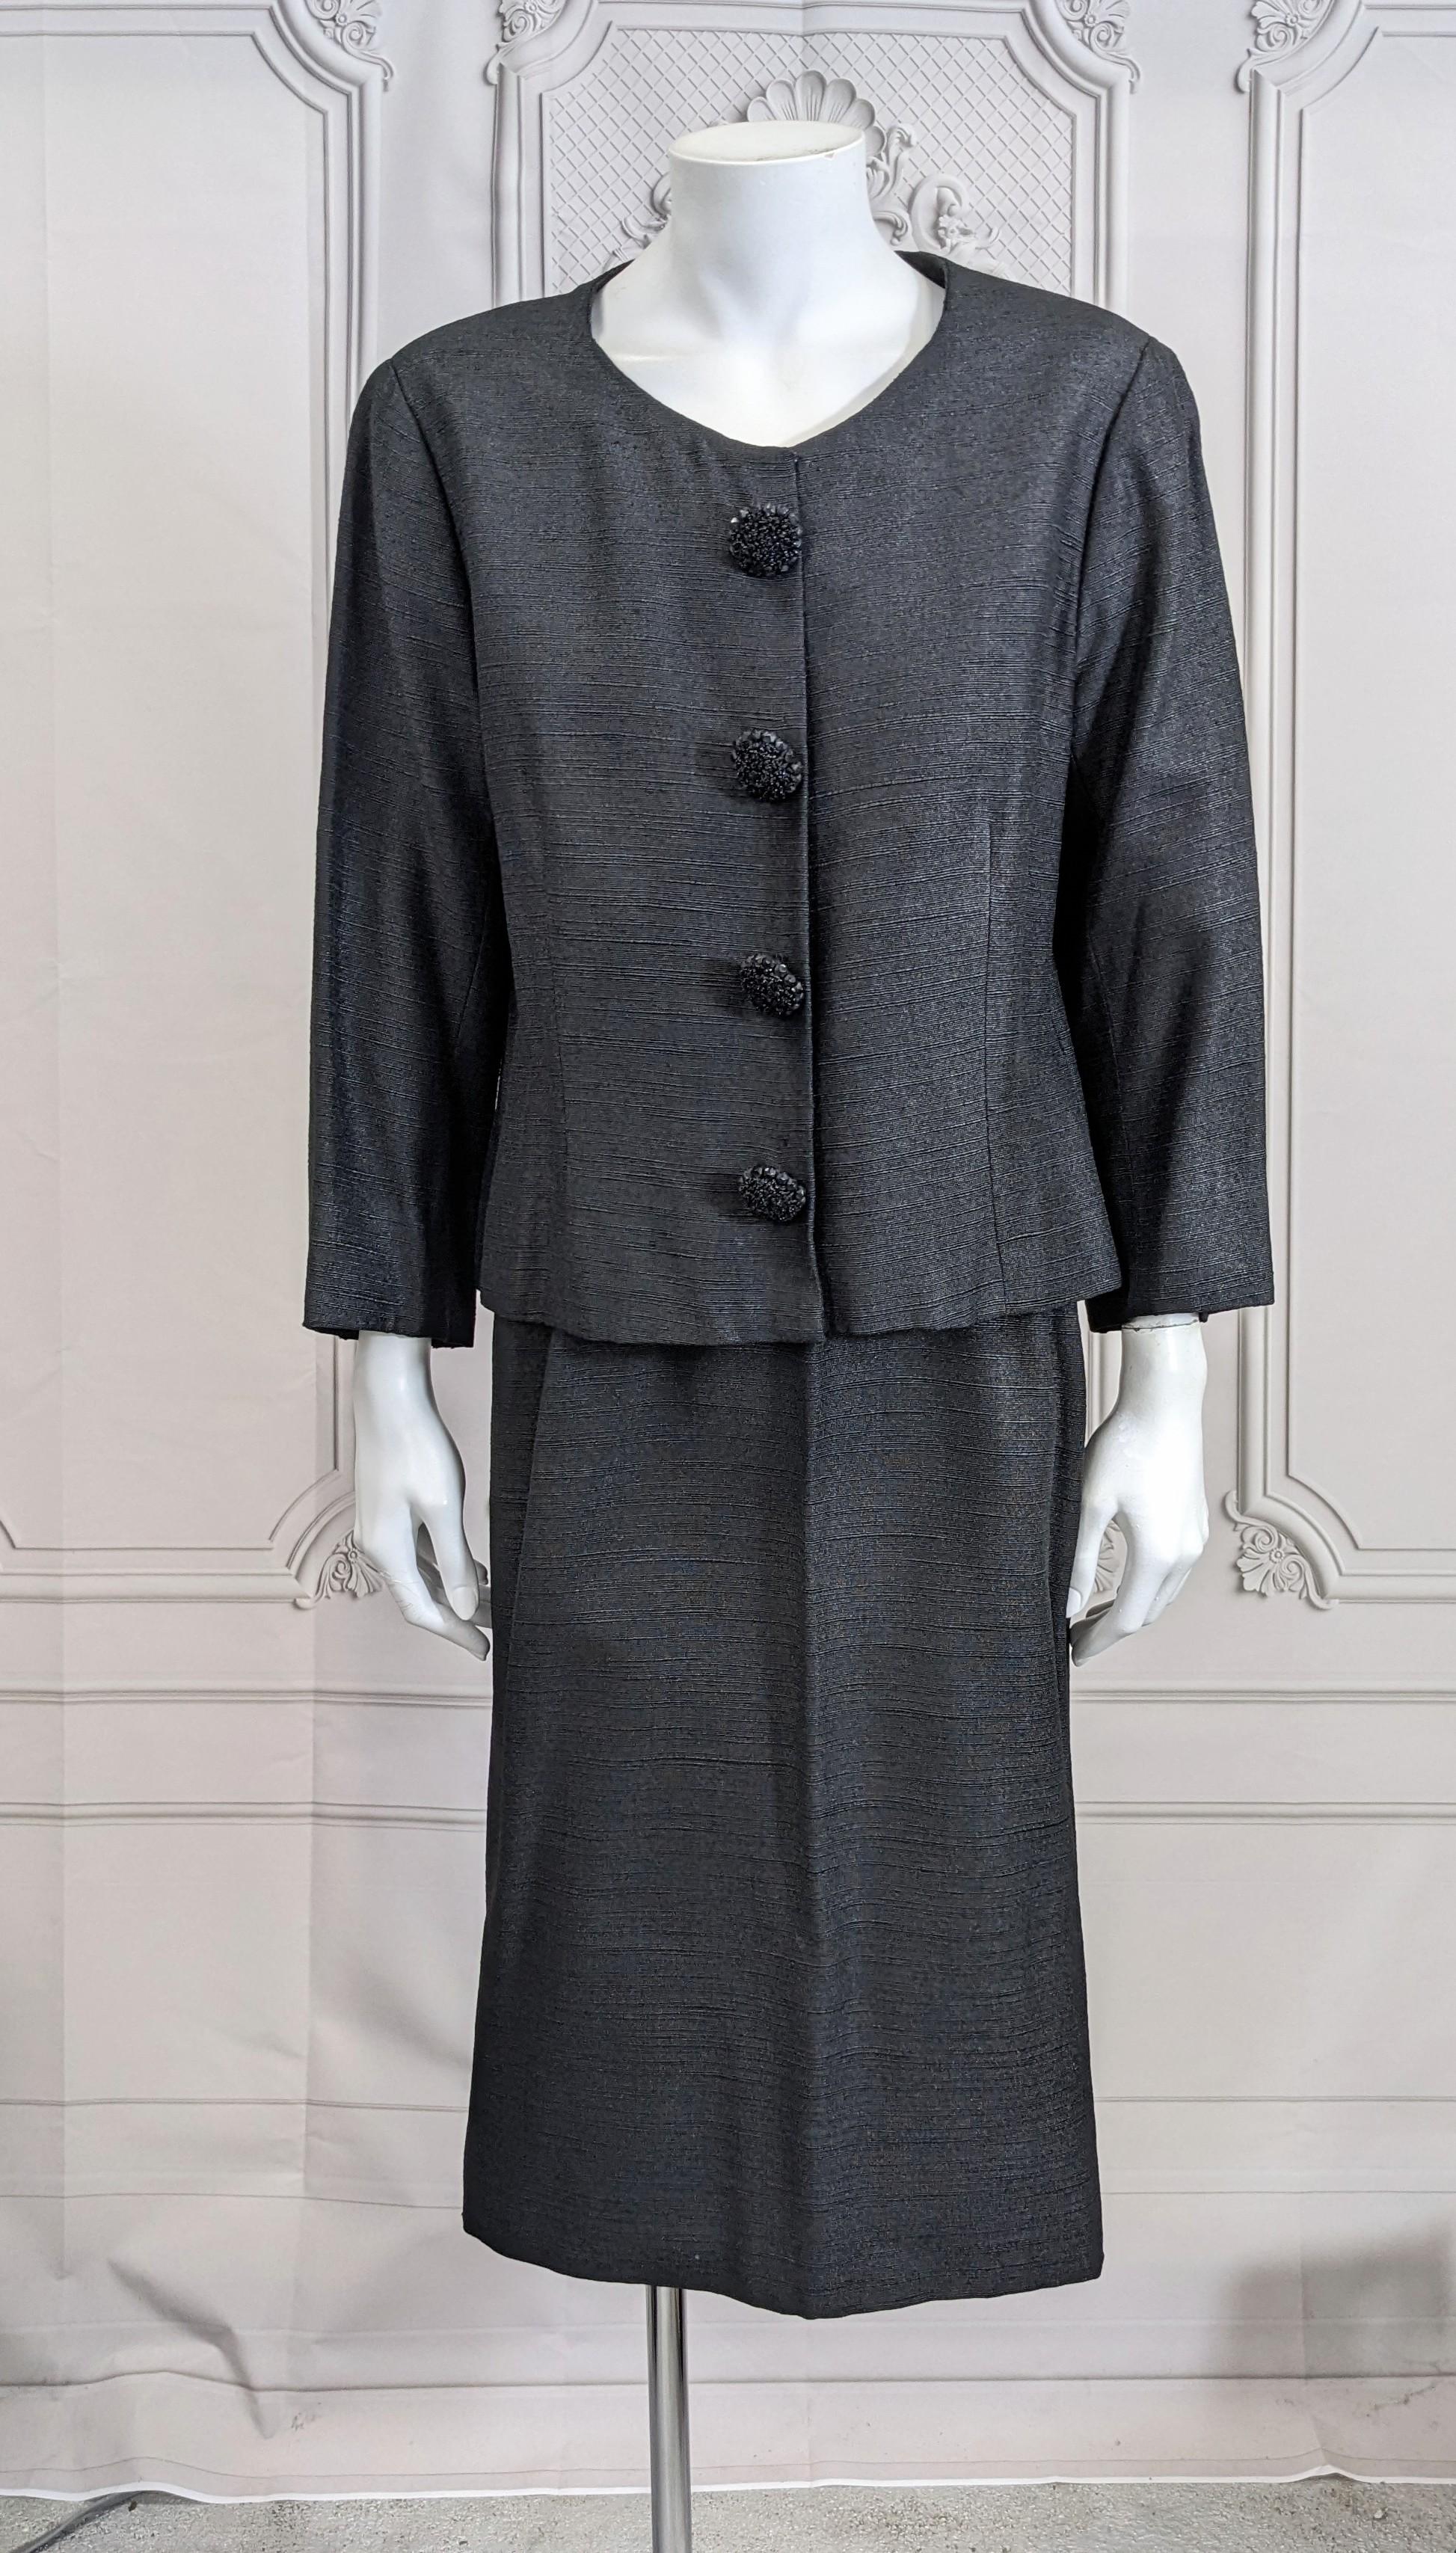 Elegant costume en soie côtelée Cristobal Balenciaga Haute Couture dans un textile noir inhabituel avec une légère brillance, probablement de la soie avec de la laine. Une coupe faussement simple avec d'incroyables boutons perlés faits main. Jupe